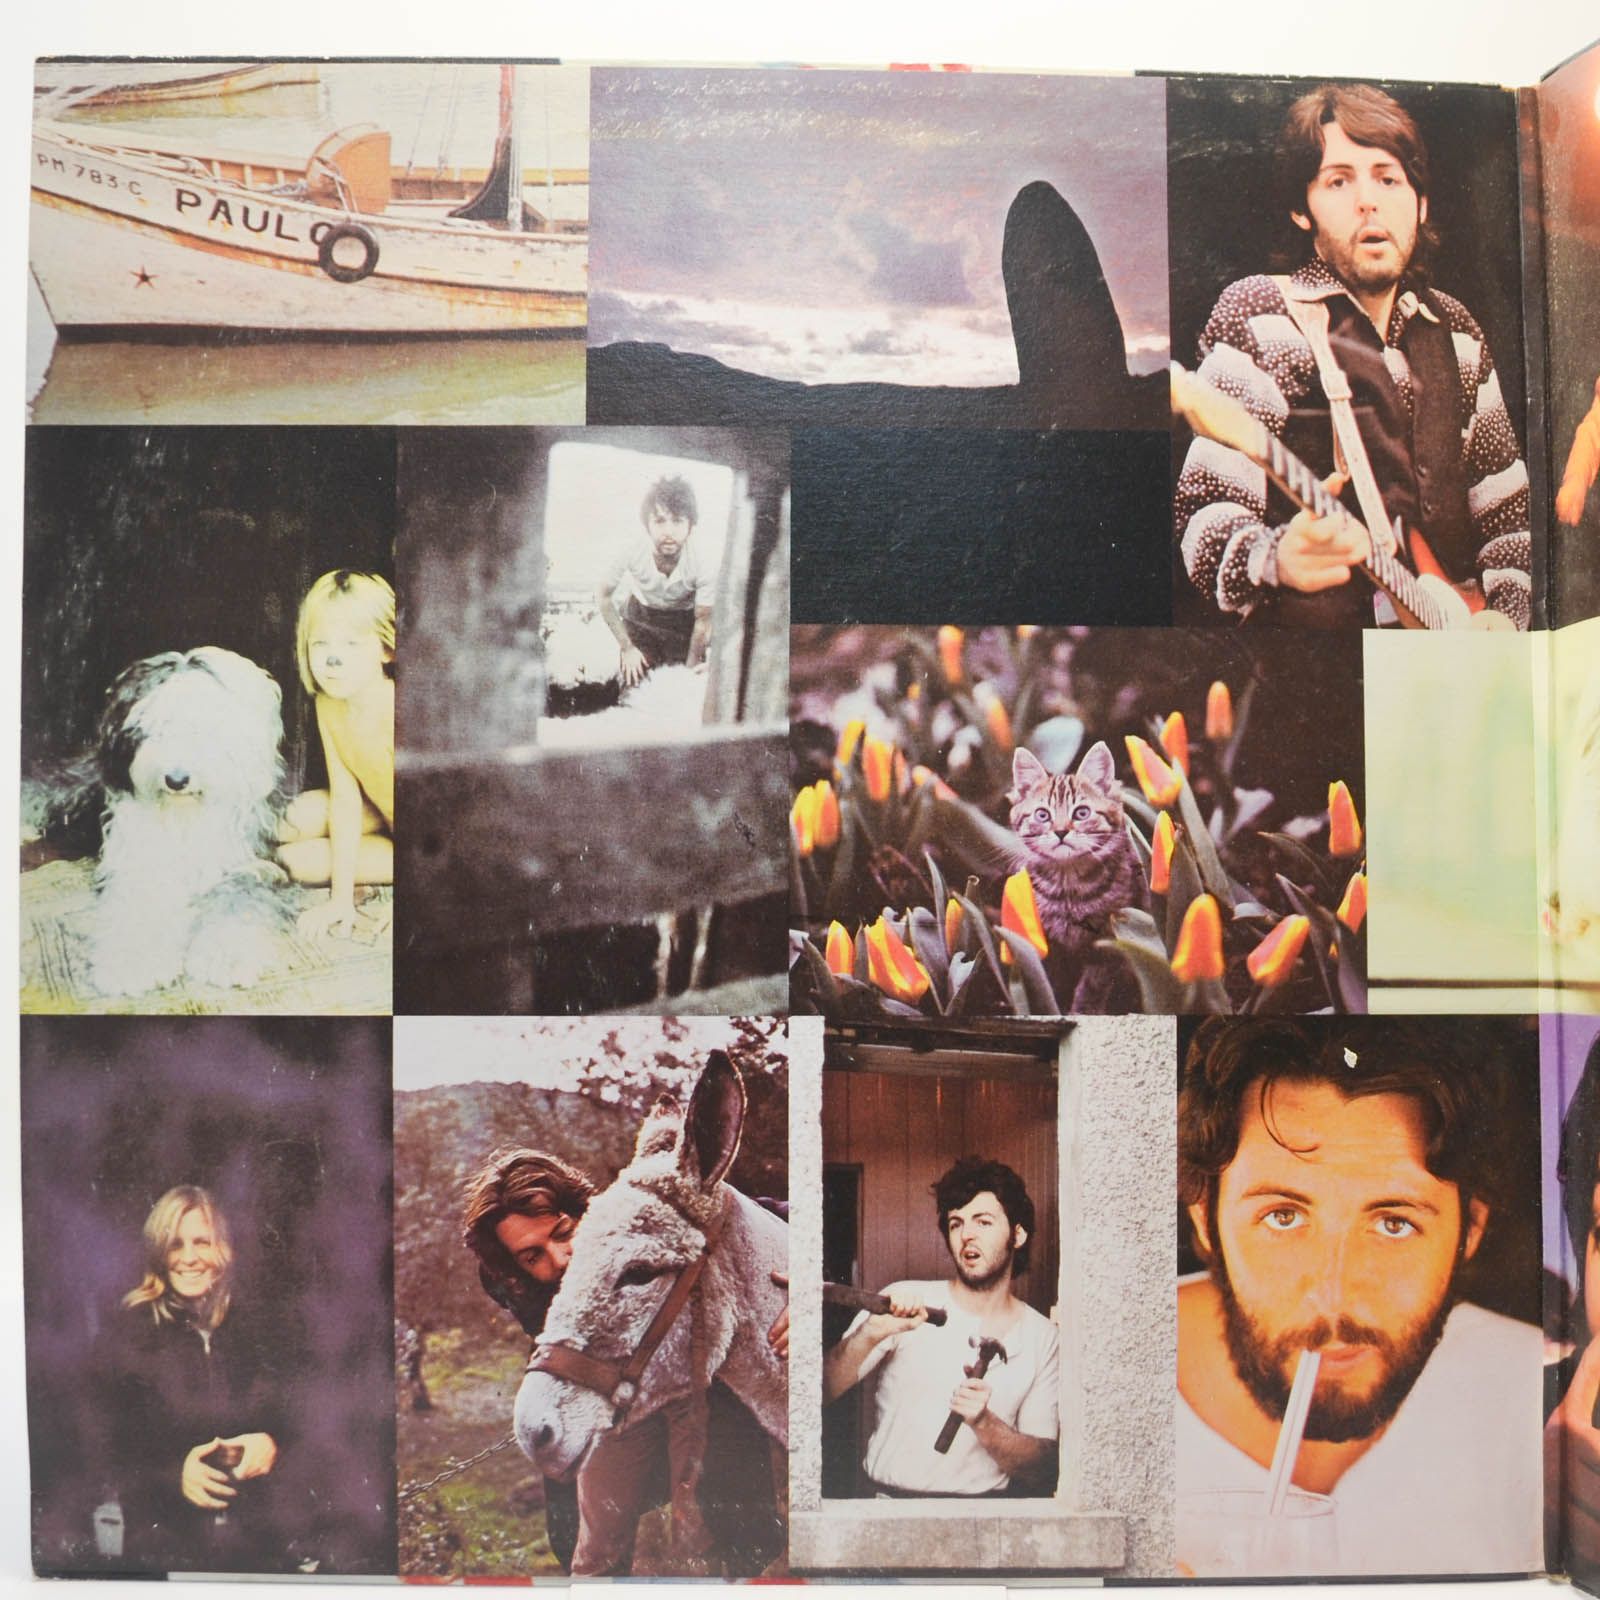 McCartney — McCartney, 1970